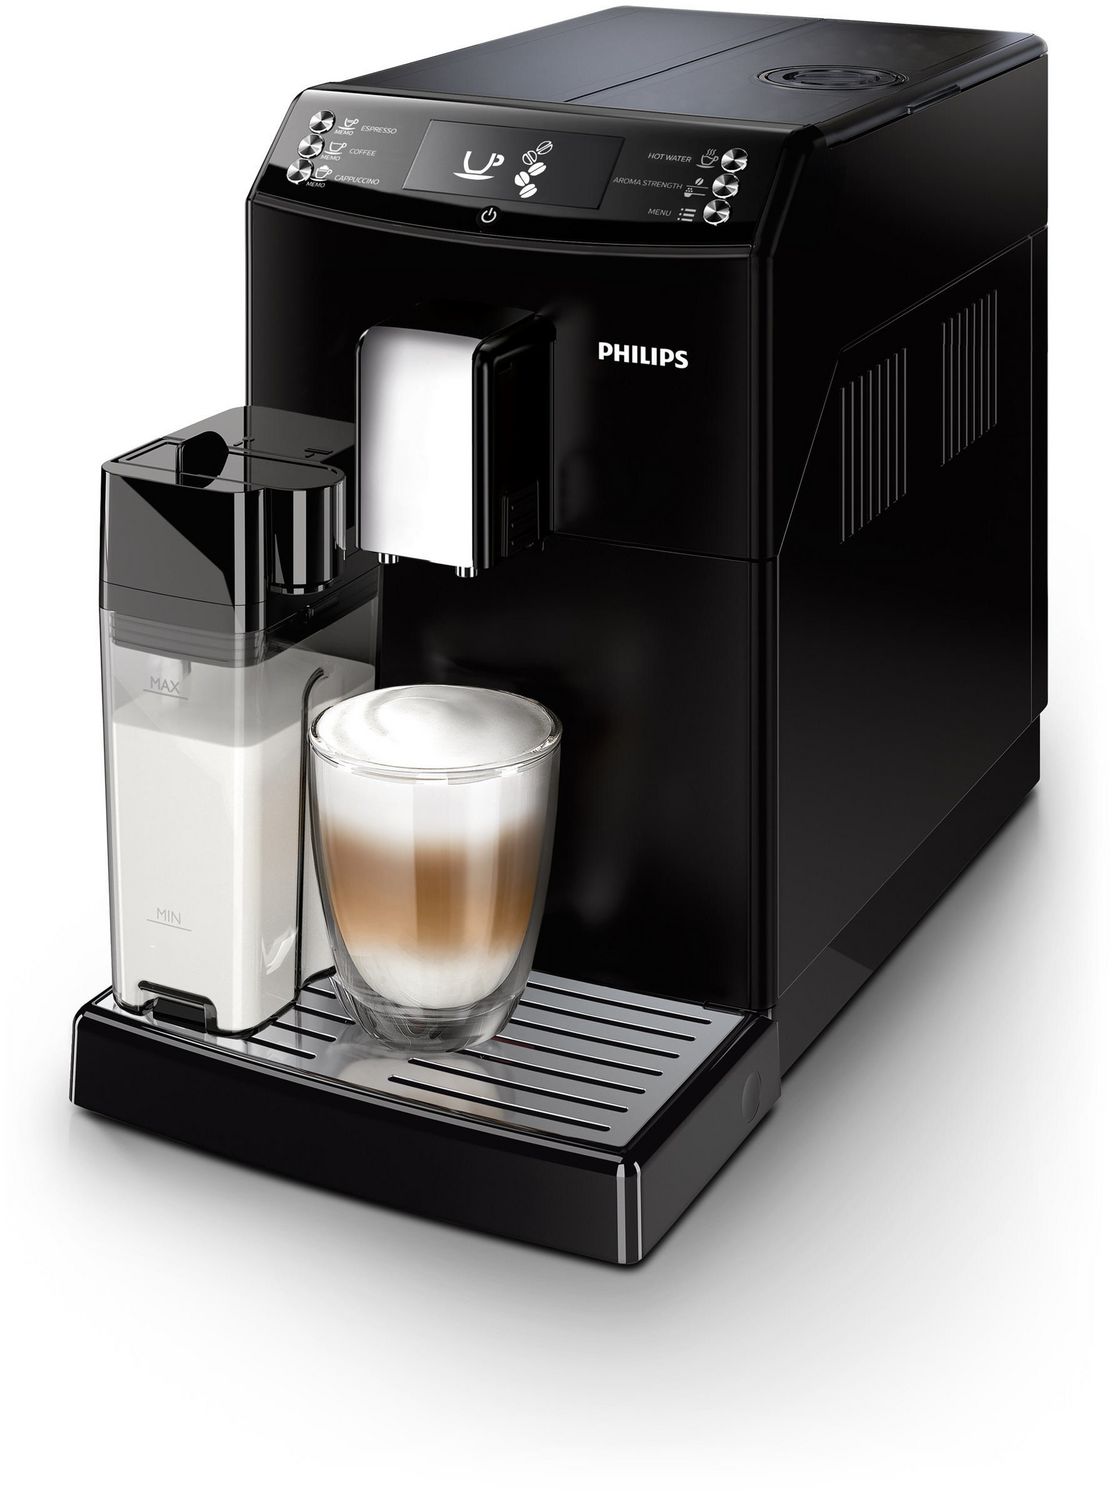 Comment détartrer ma machine espresso Philips ?